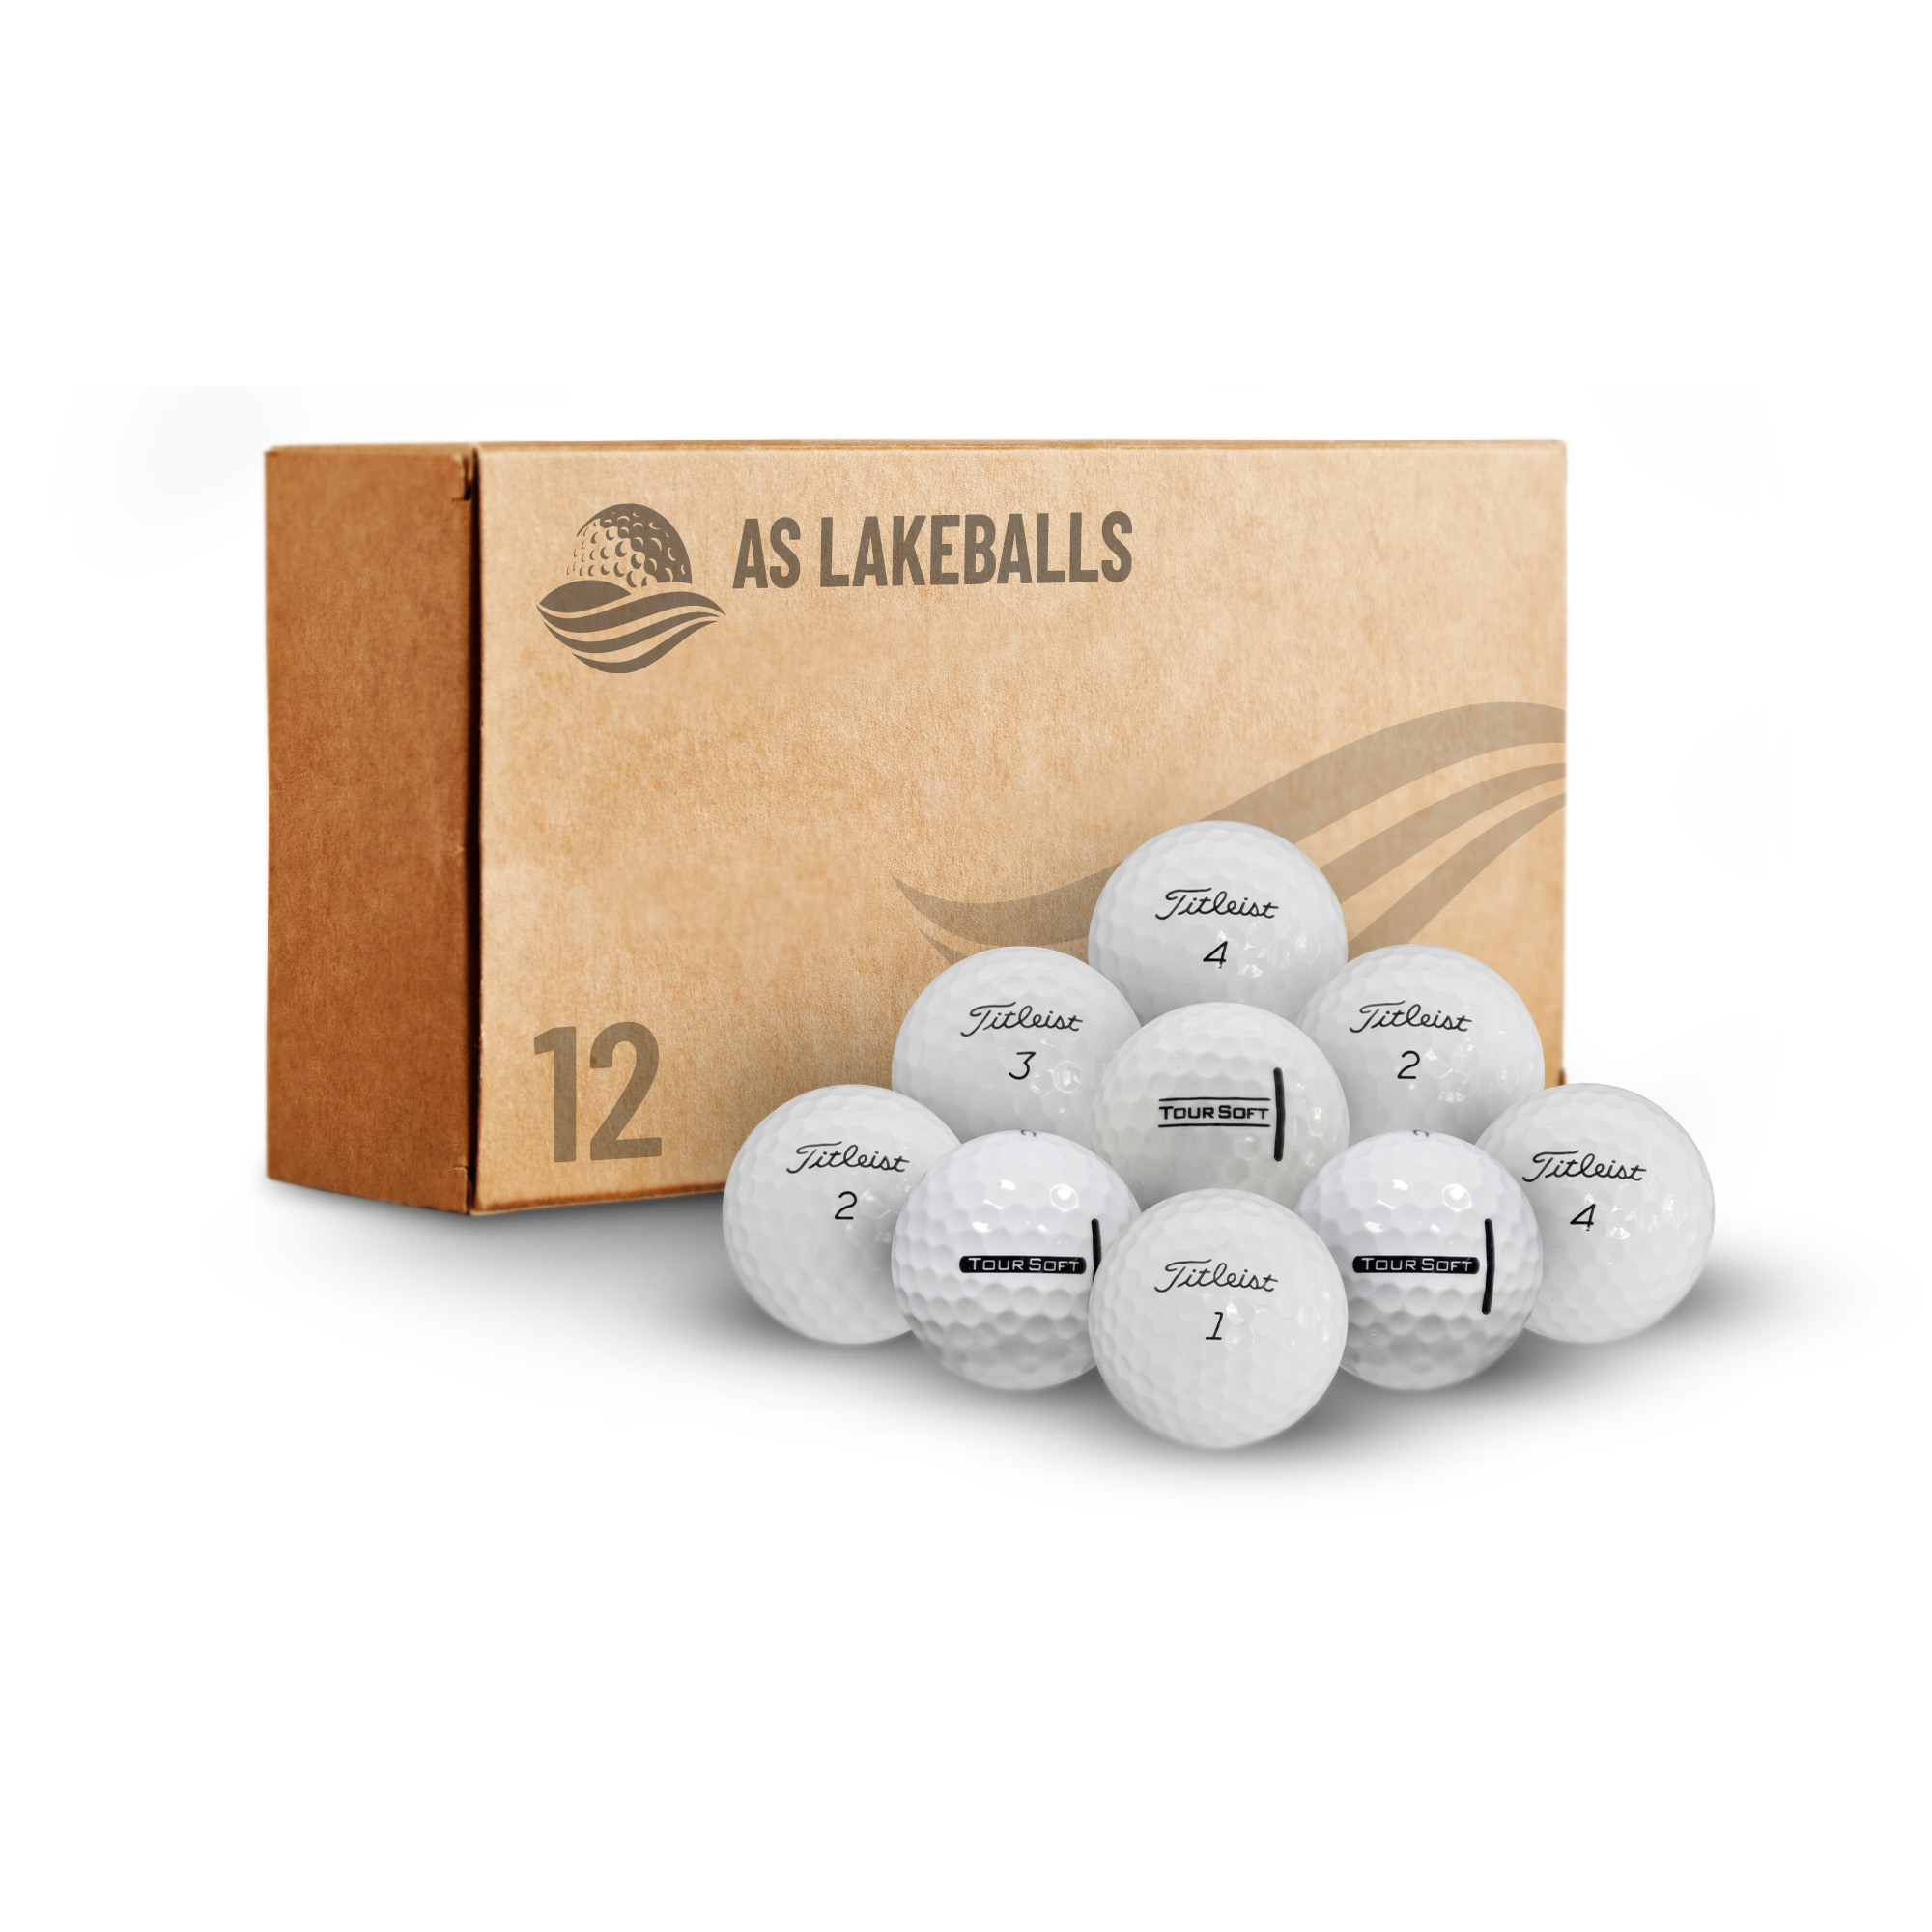 12 Stück Titleist Tour Soft AA-AAA Lakeballs bei AS Lakeballs günstig kaufen